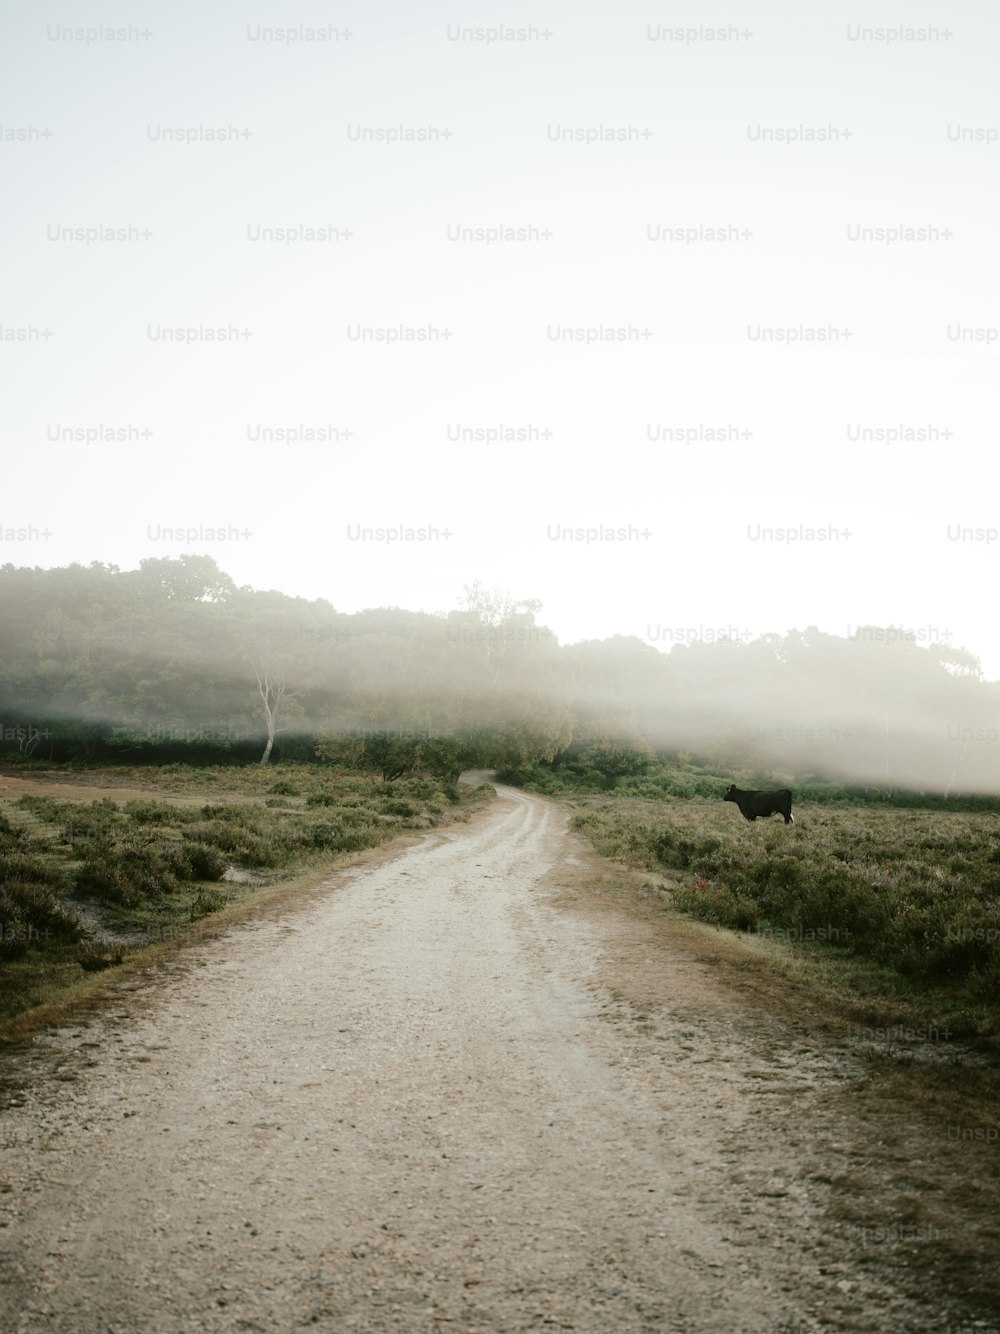 Eine Kuh, die auf einem Feldweg mitten auf einem Feld steht